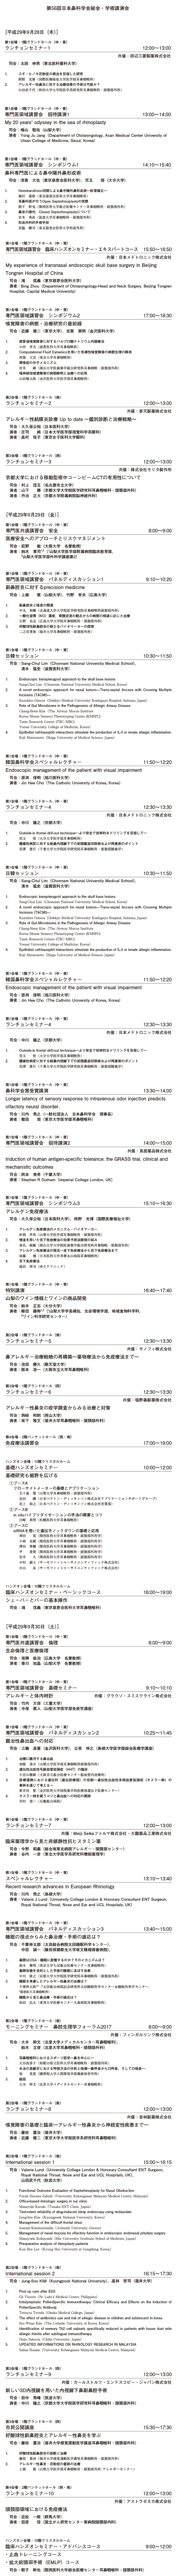 第56回日本鼻科学会日程表：依頼演題